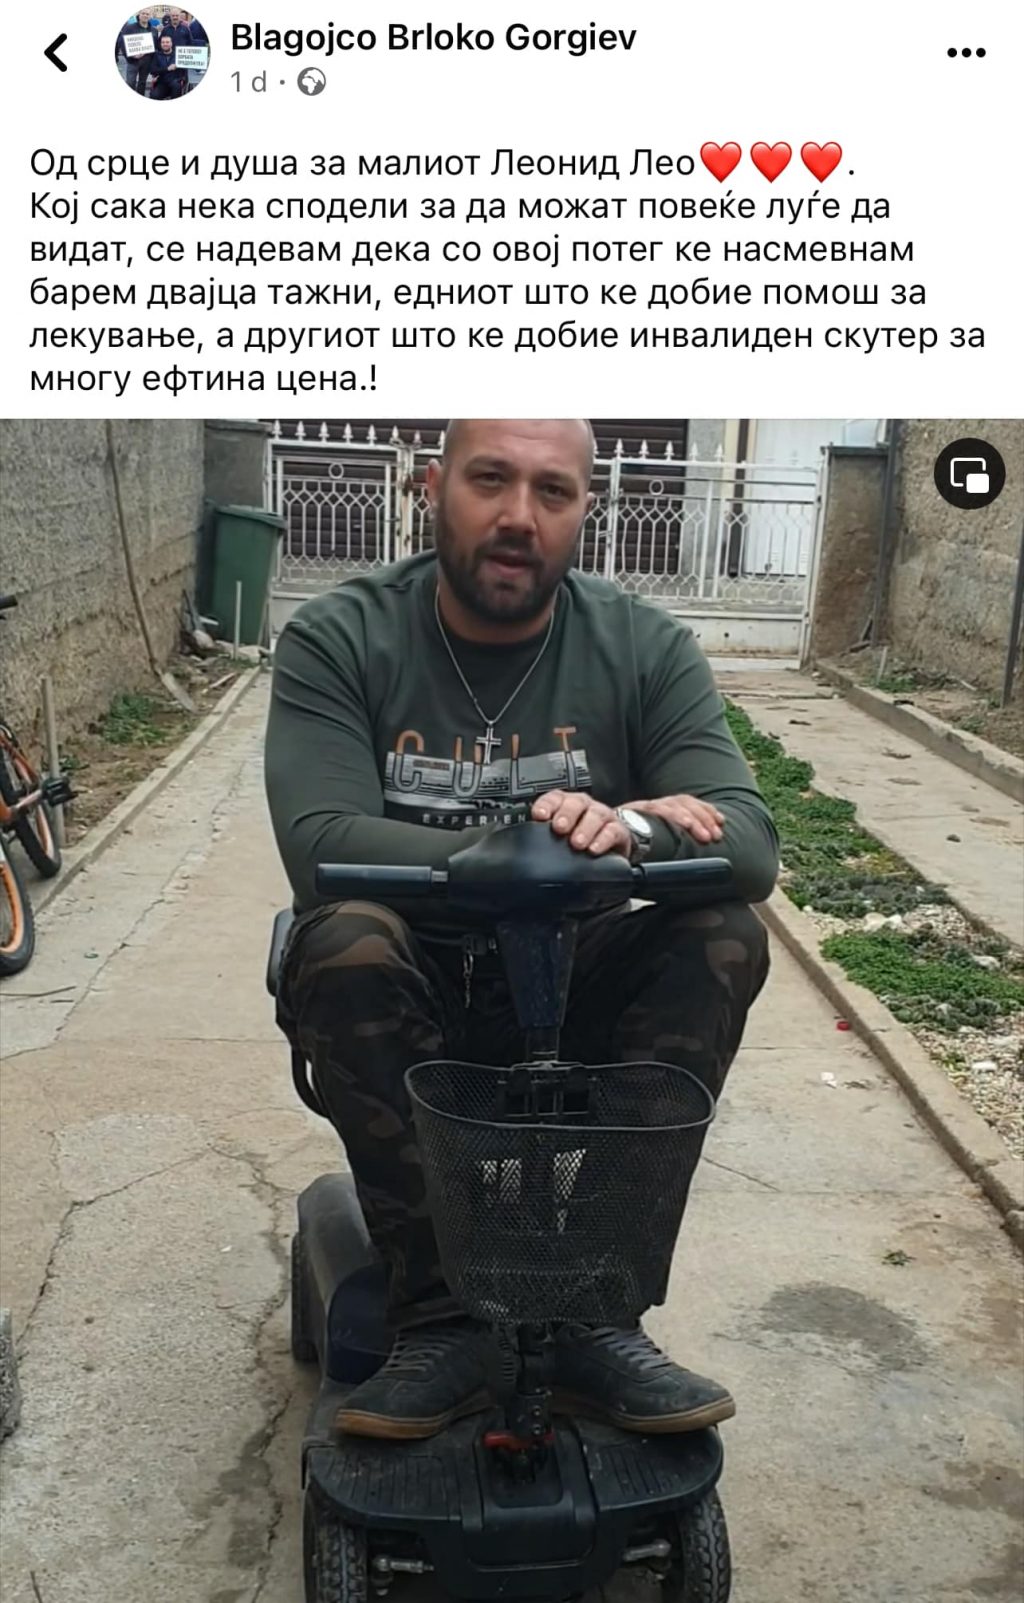 ЃОРЃИЕВСКИ: Инвалидниот скутер кој Благојчо го продава ќе остане кај него – уплатив 30.000 денари за лекувањето на Лео